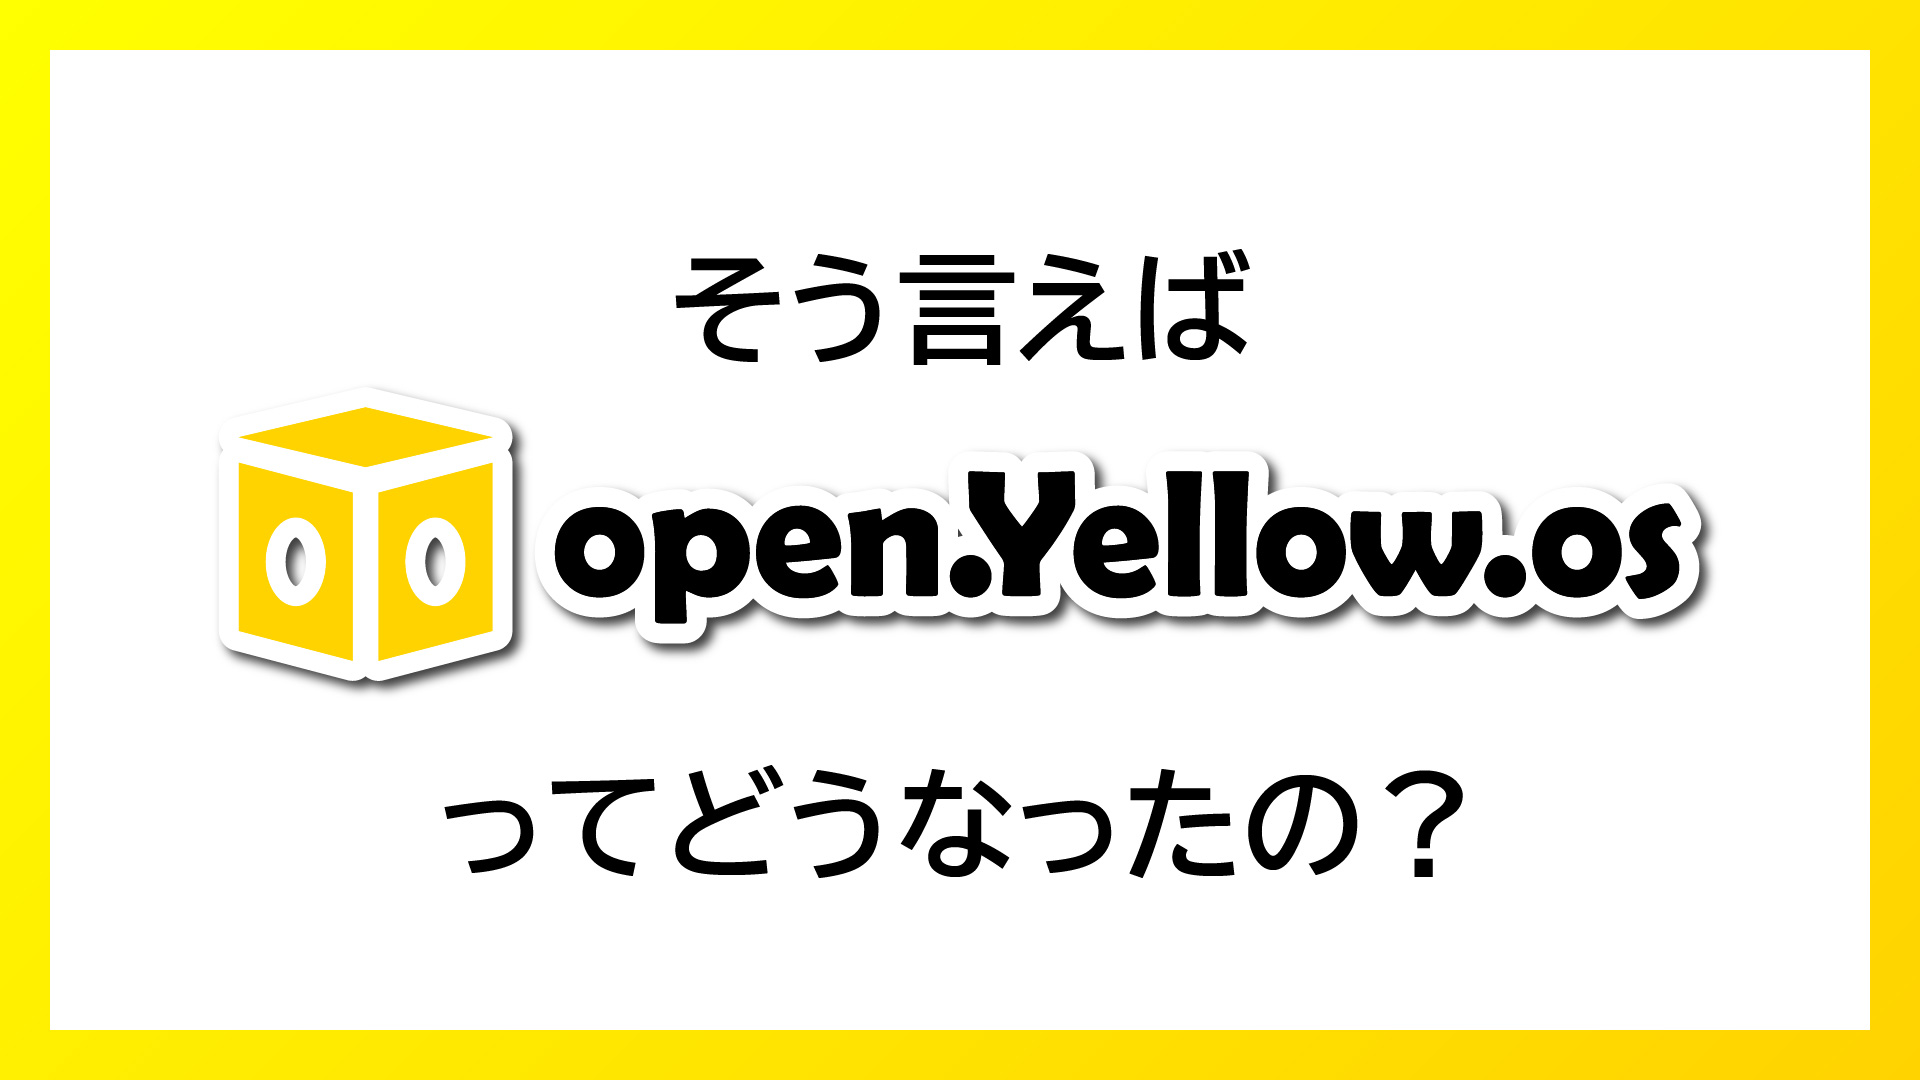 【開発レポート】そう言えば "open.Yellow.os" ってどうなったの？